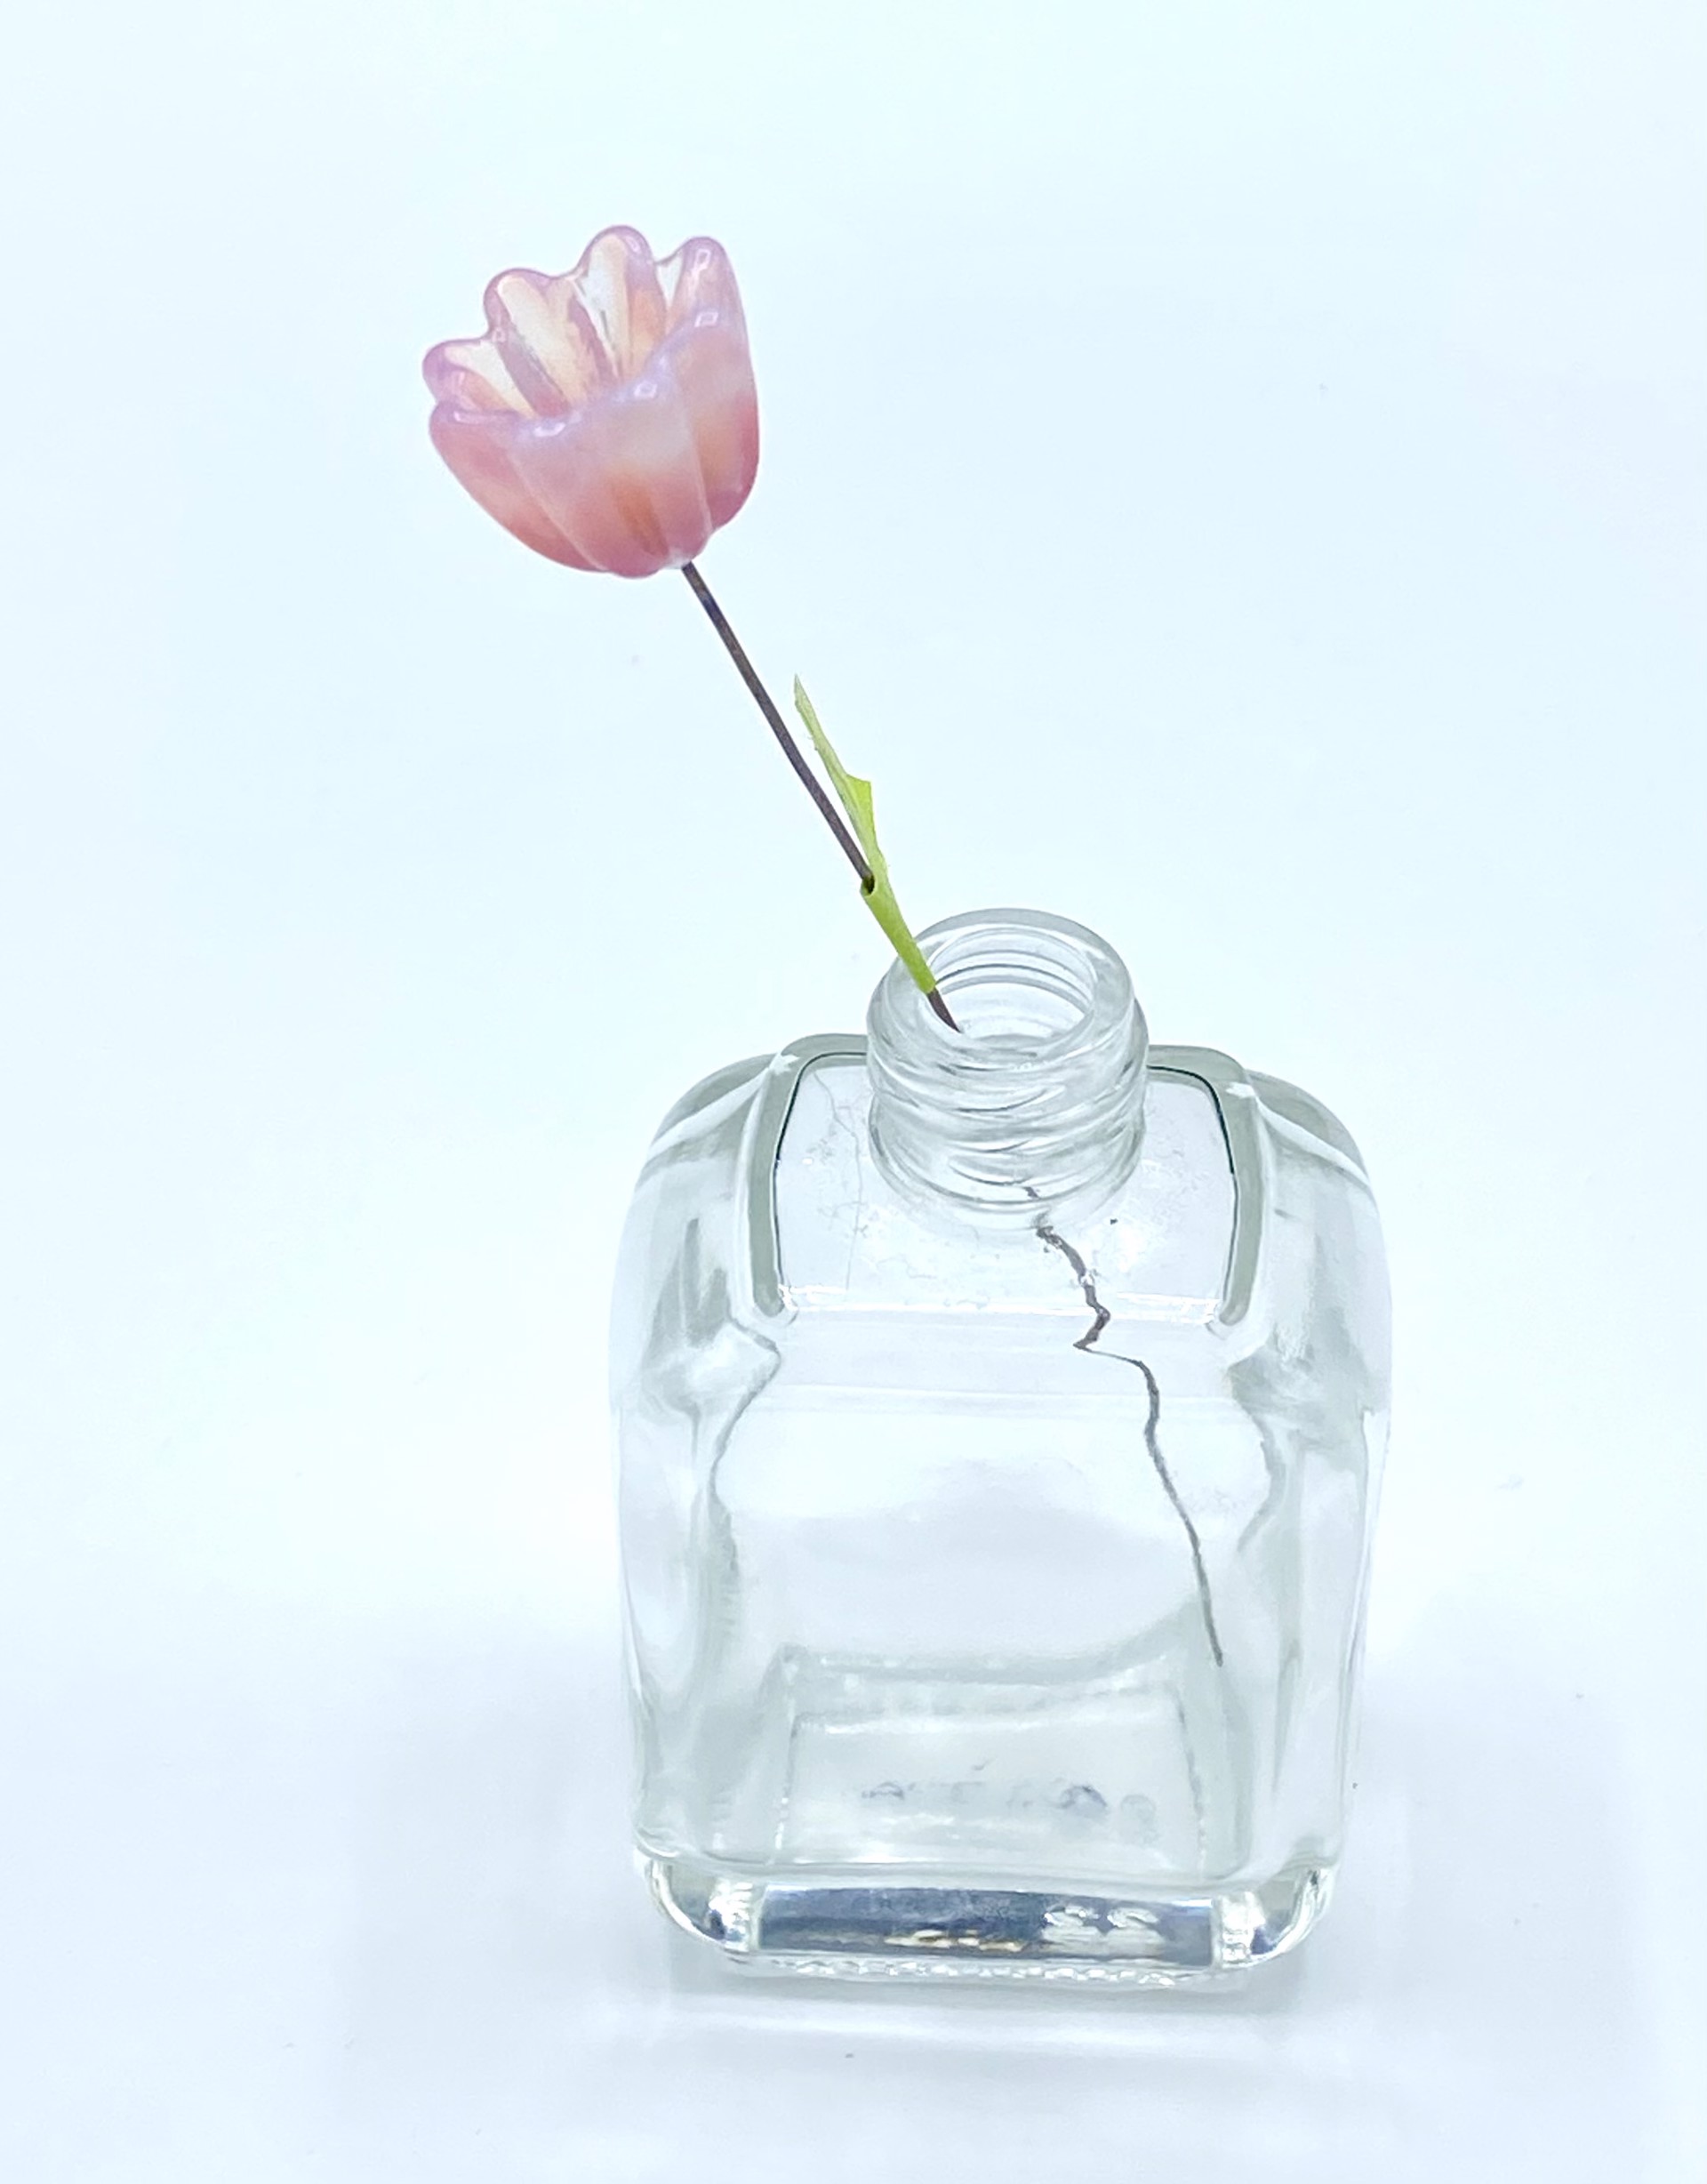 Ballet Slipper Bell Flower by Emelie Hebert